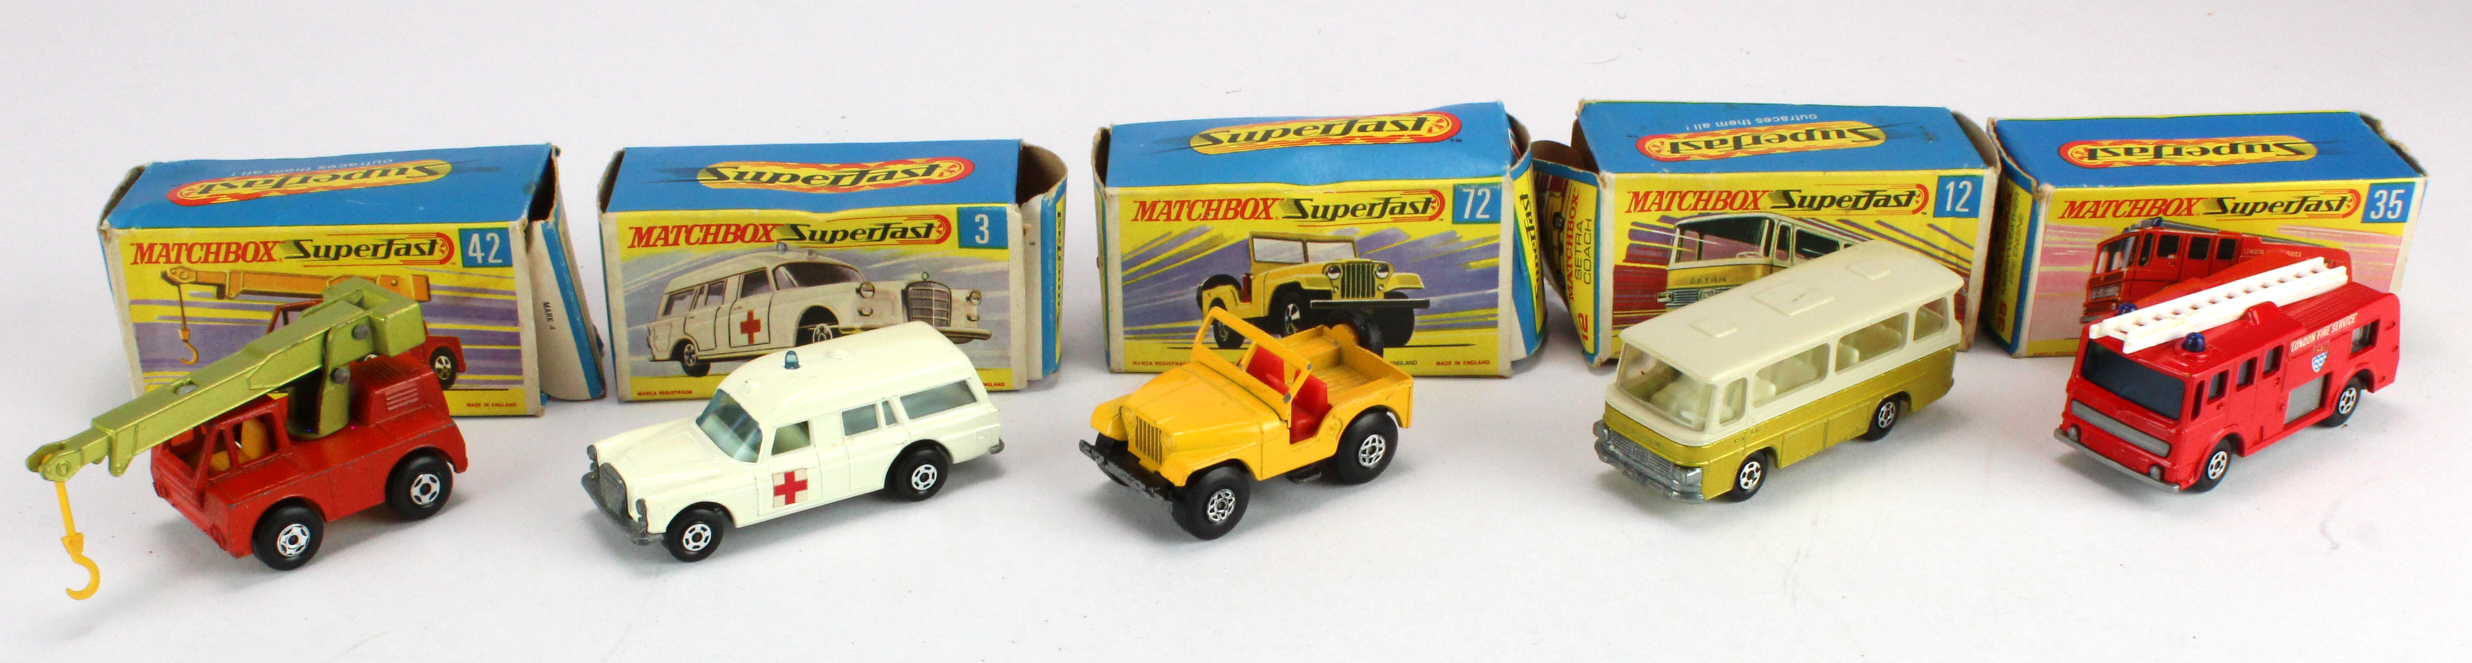 Matchbox Superfast. Five boxed models, comprising no. 3 (Mercedes Benz Binz Ambulance); no. 12 (